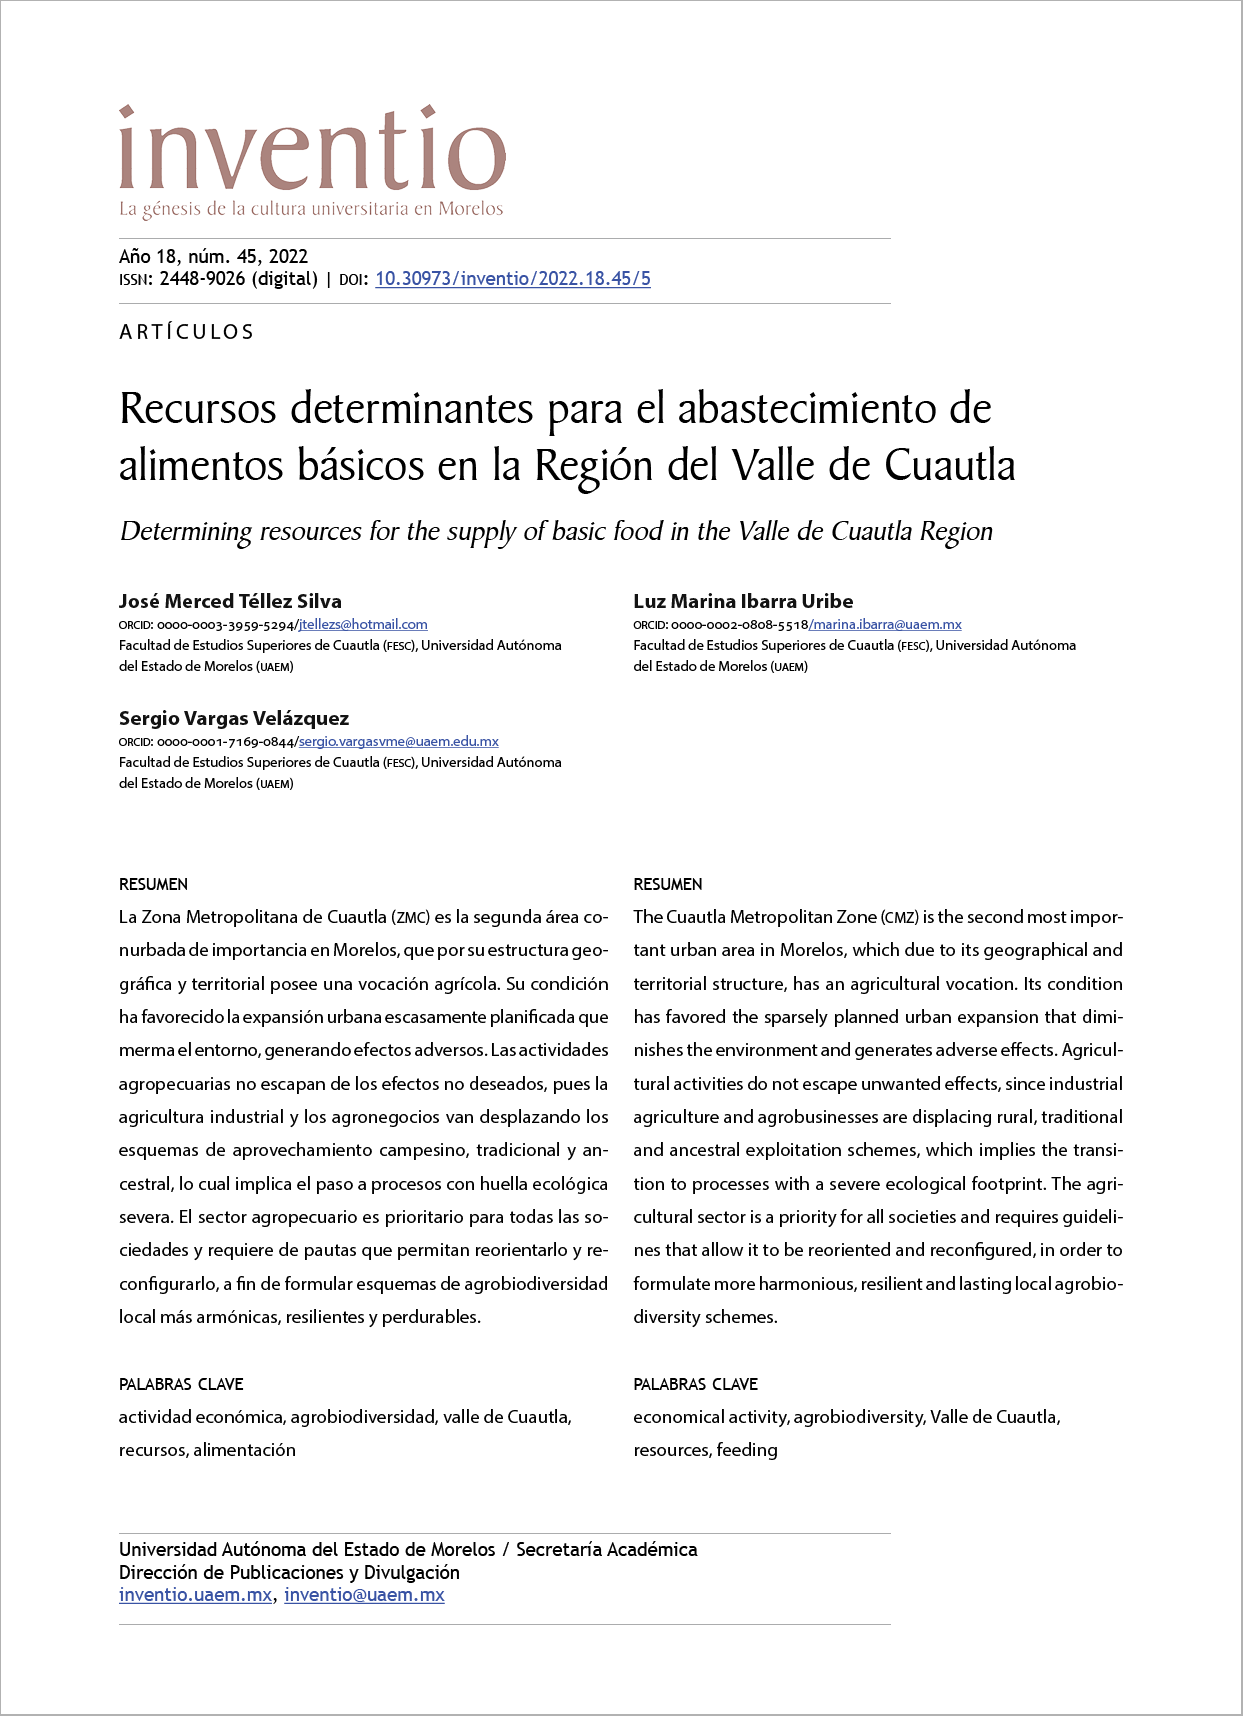  Recursos determinantes para el abastecimiento de alimentos básicos en la Región del Valle de Cuautla